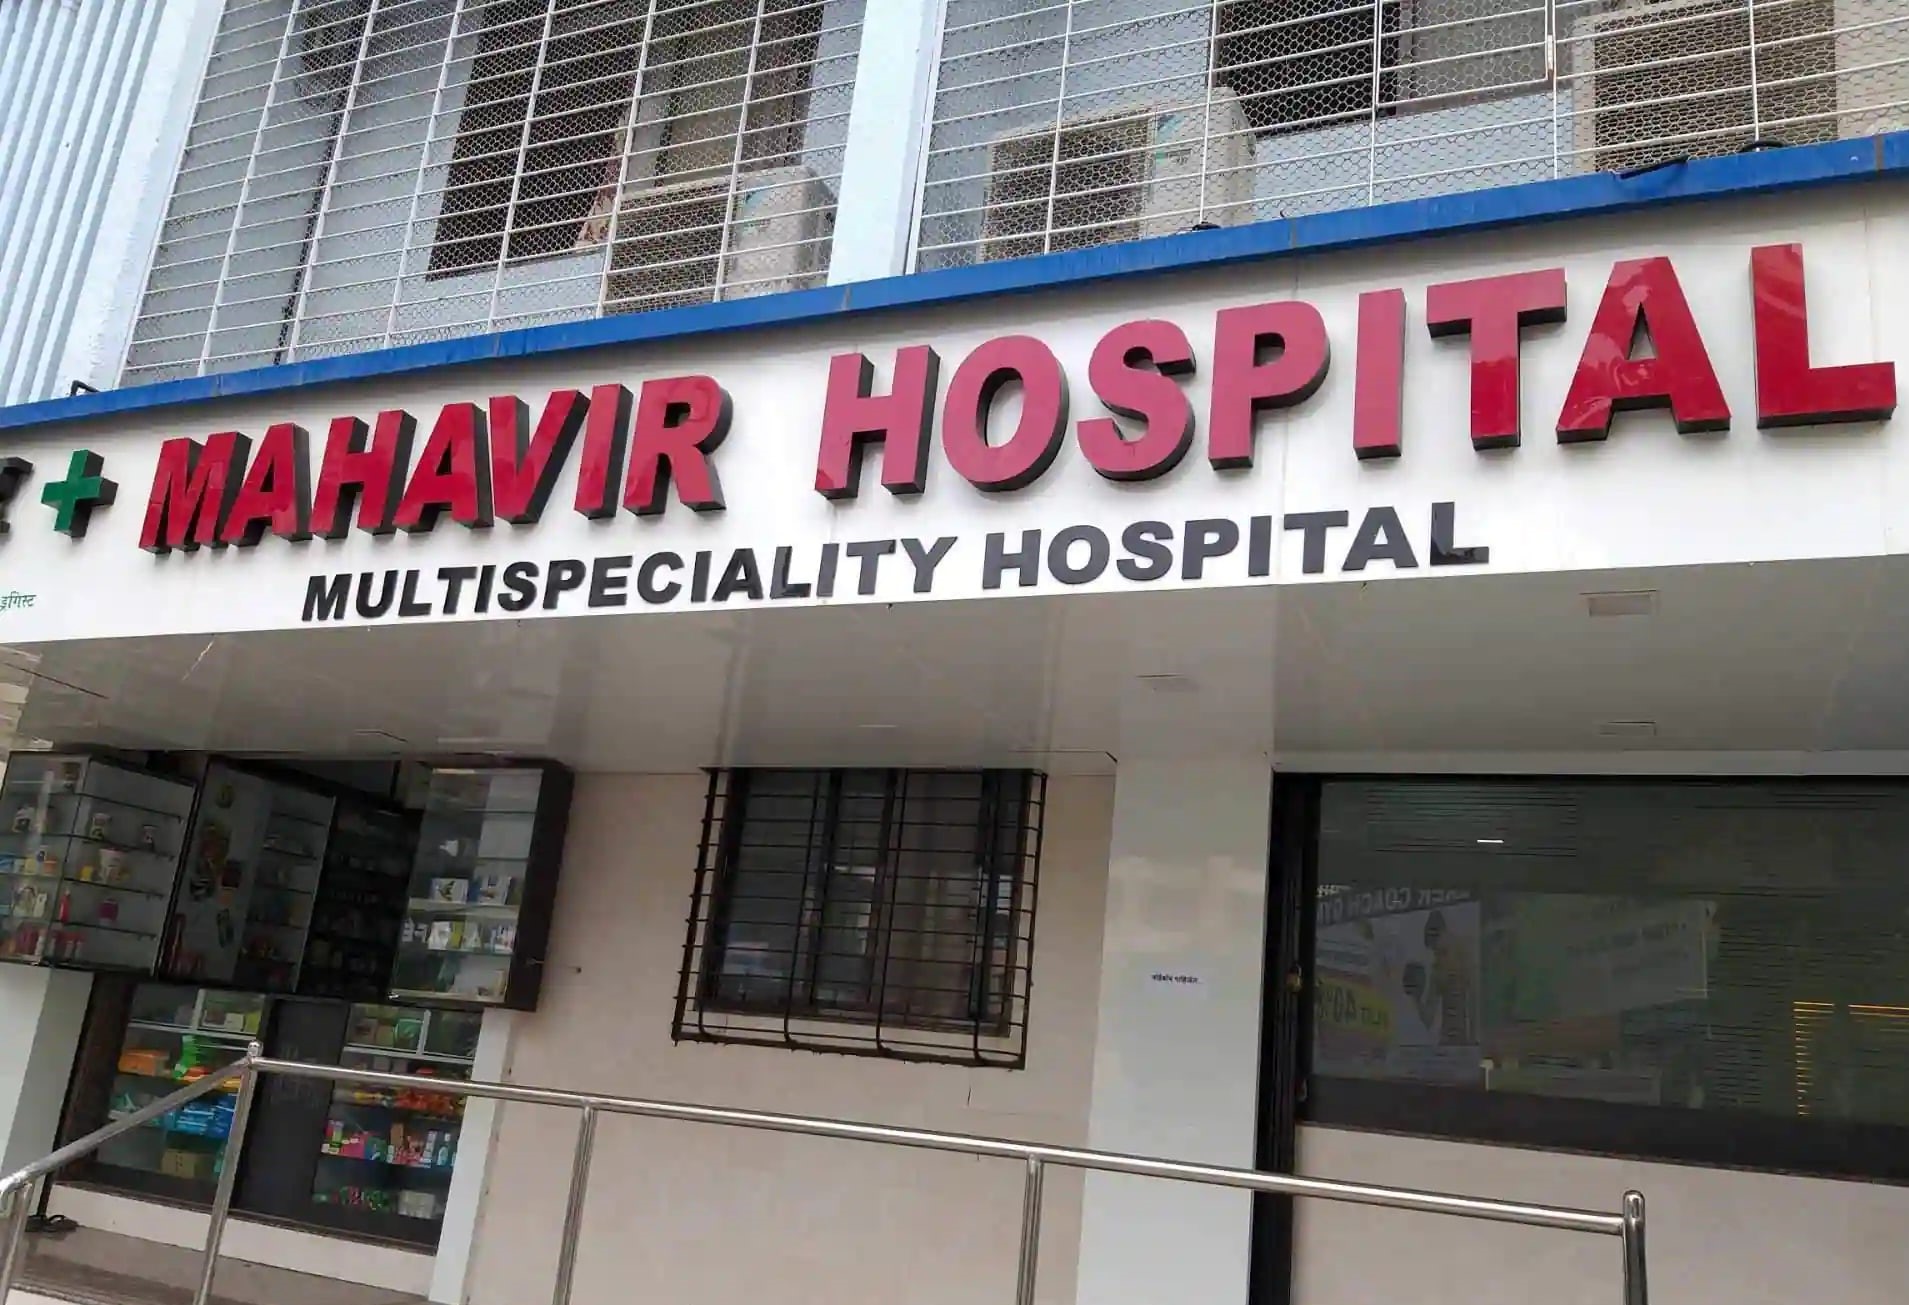 Mahavir Hospital